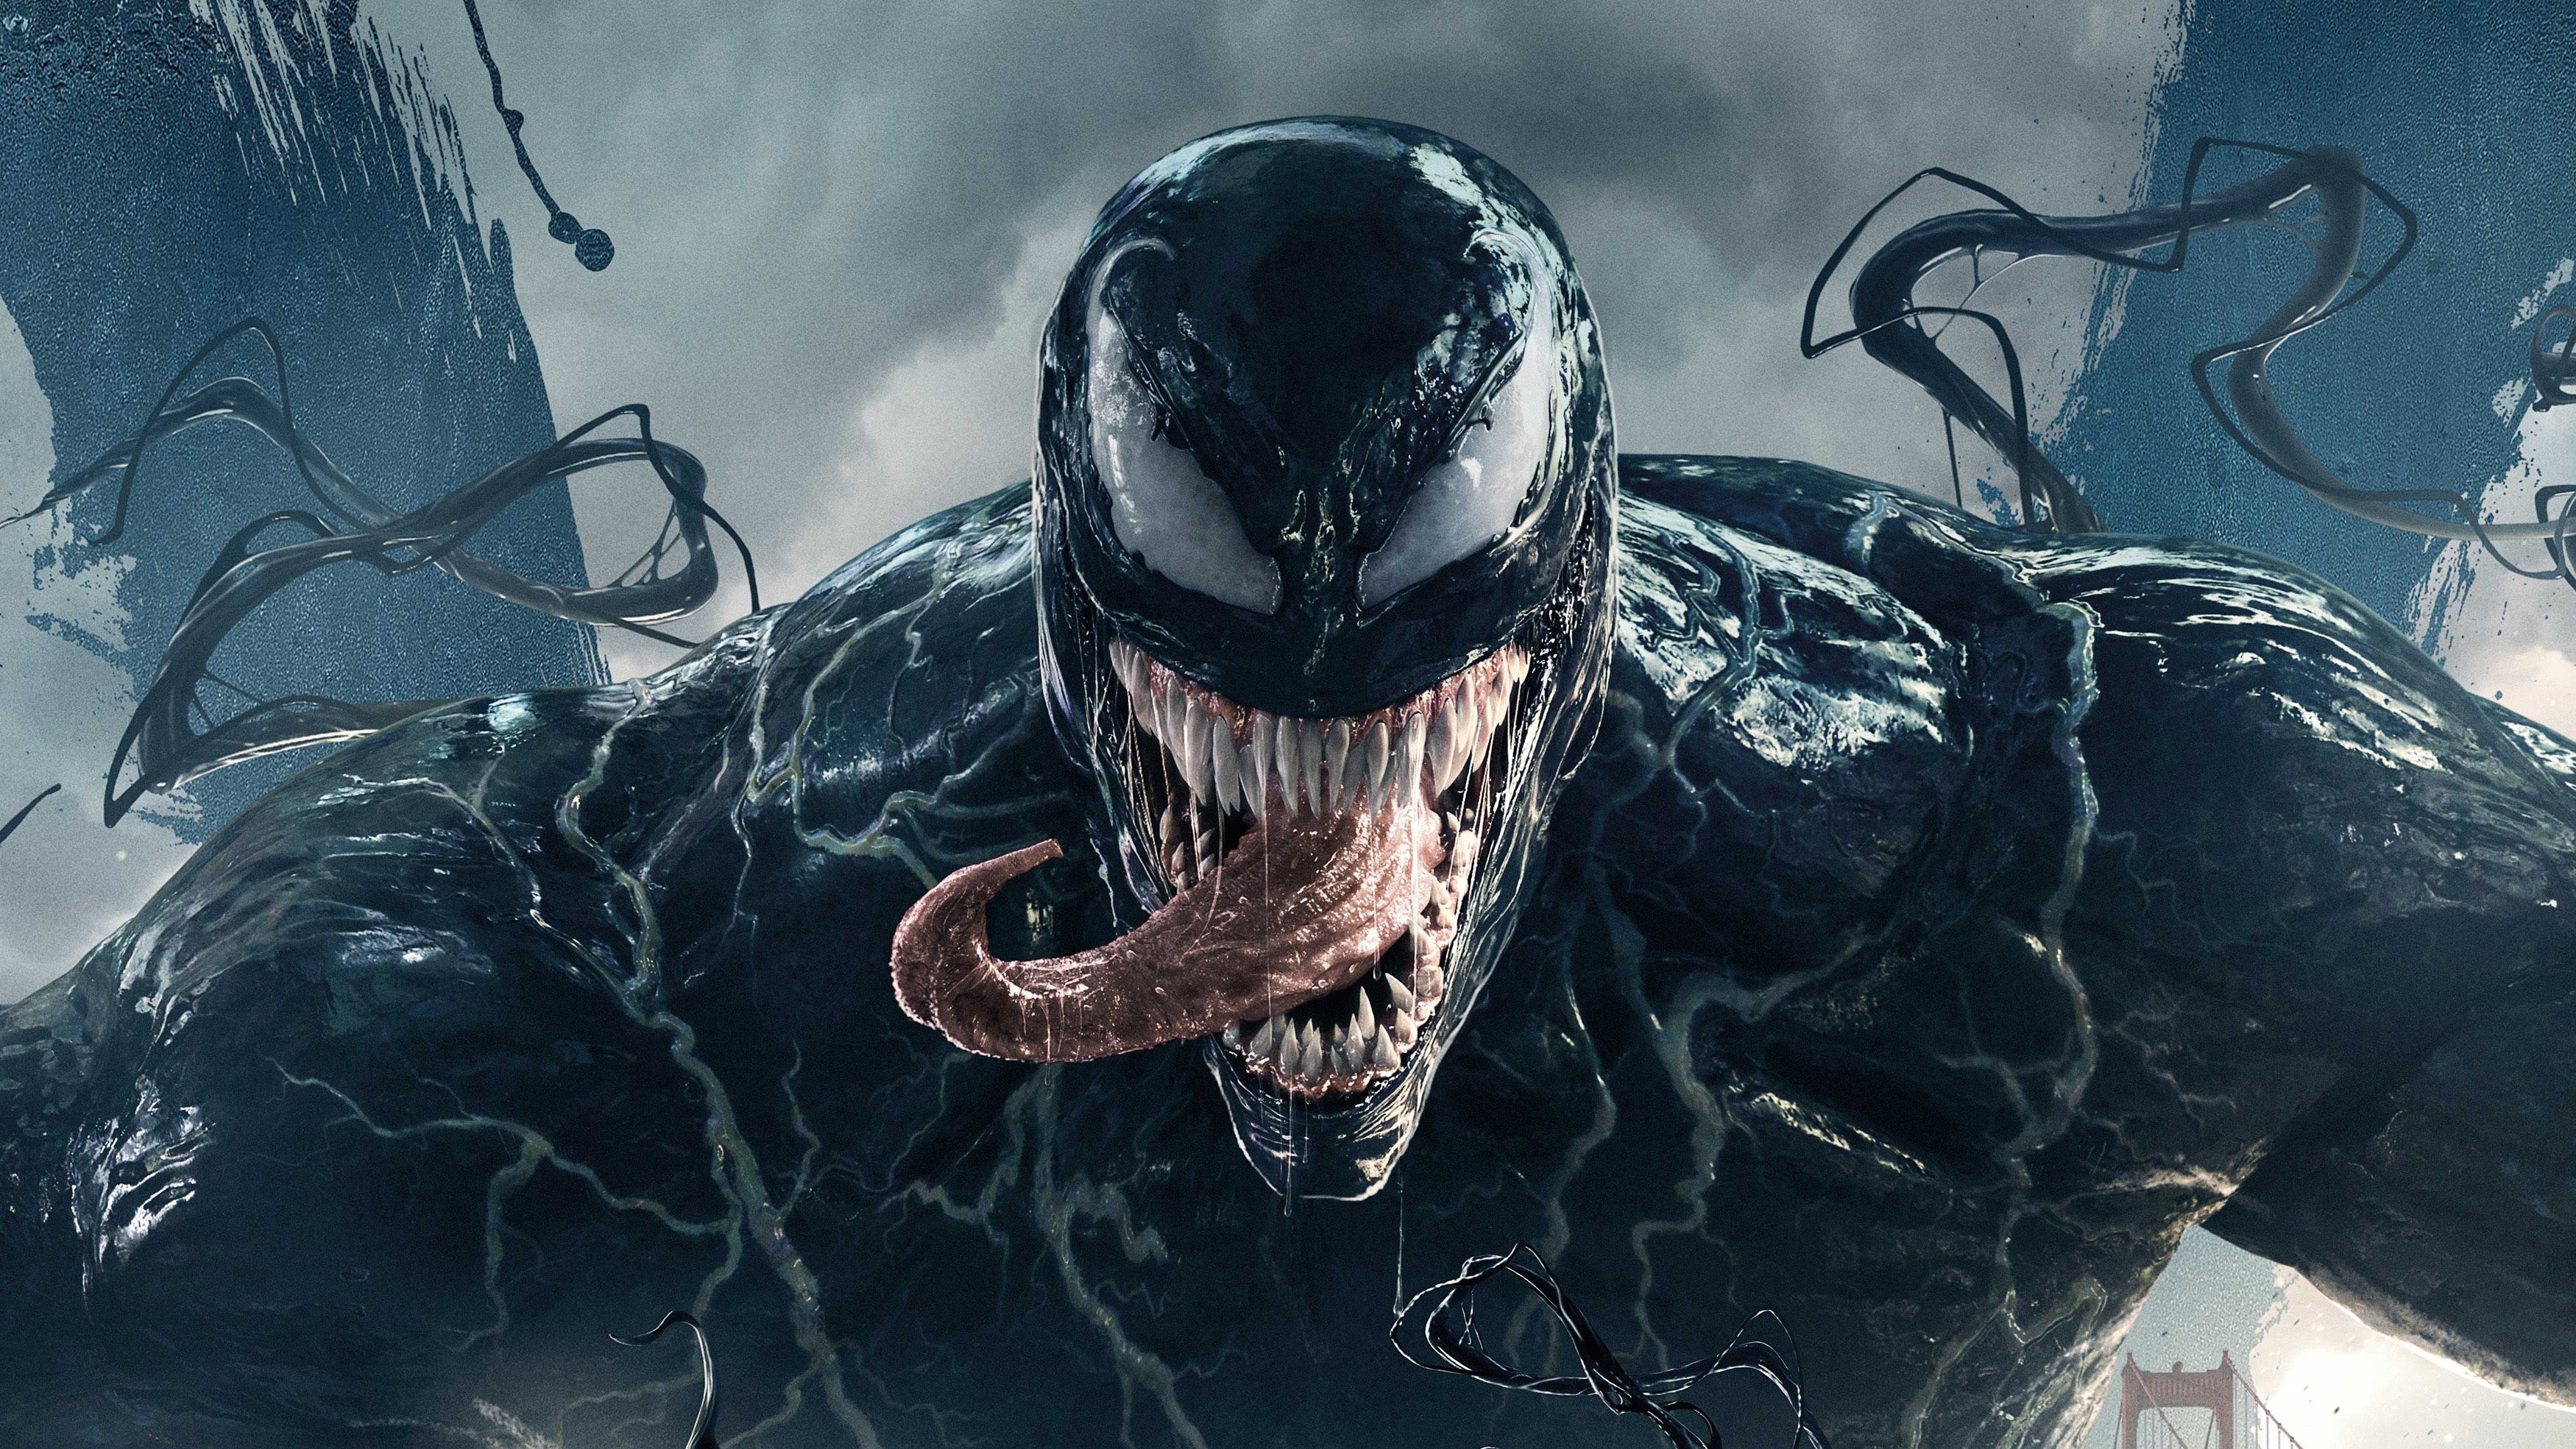 Yêu thích bộ phim Venom 2 và đang tìm kiếm hình nền phù hợp? Wallpaper Cave sẽ mang đến cho bạn những hình nền 4K Venom 2 chất lượng nhất và phù hợp với sở thích của bạn.